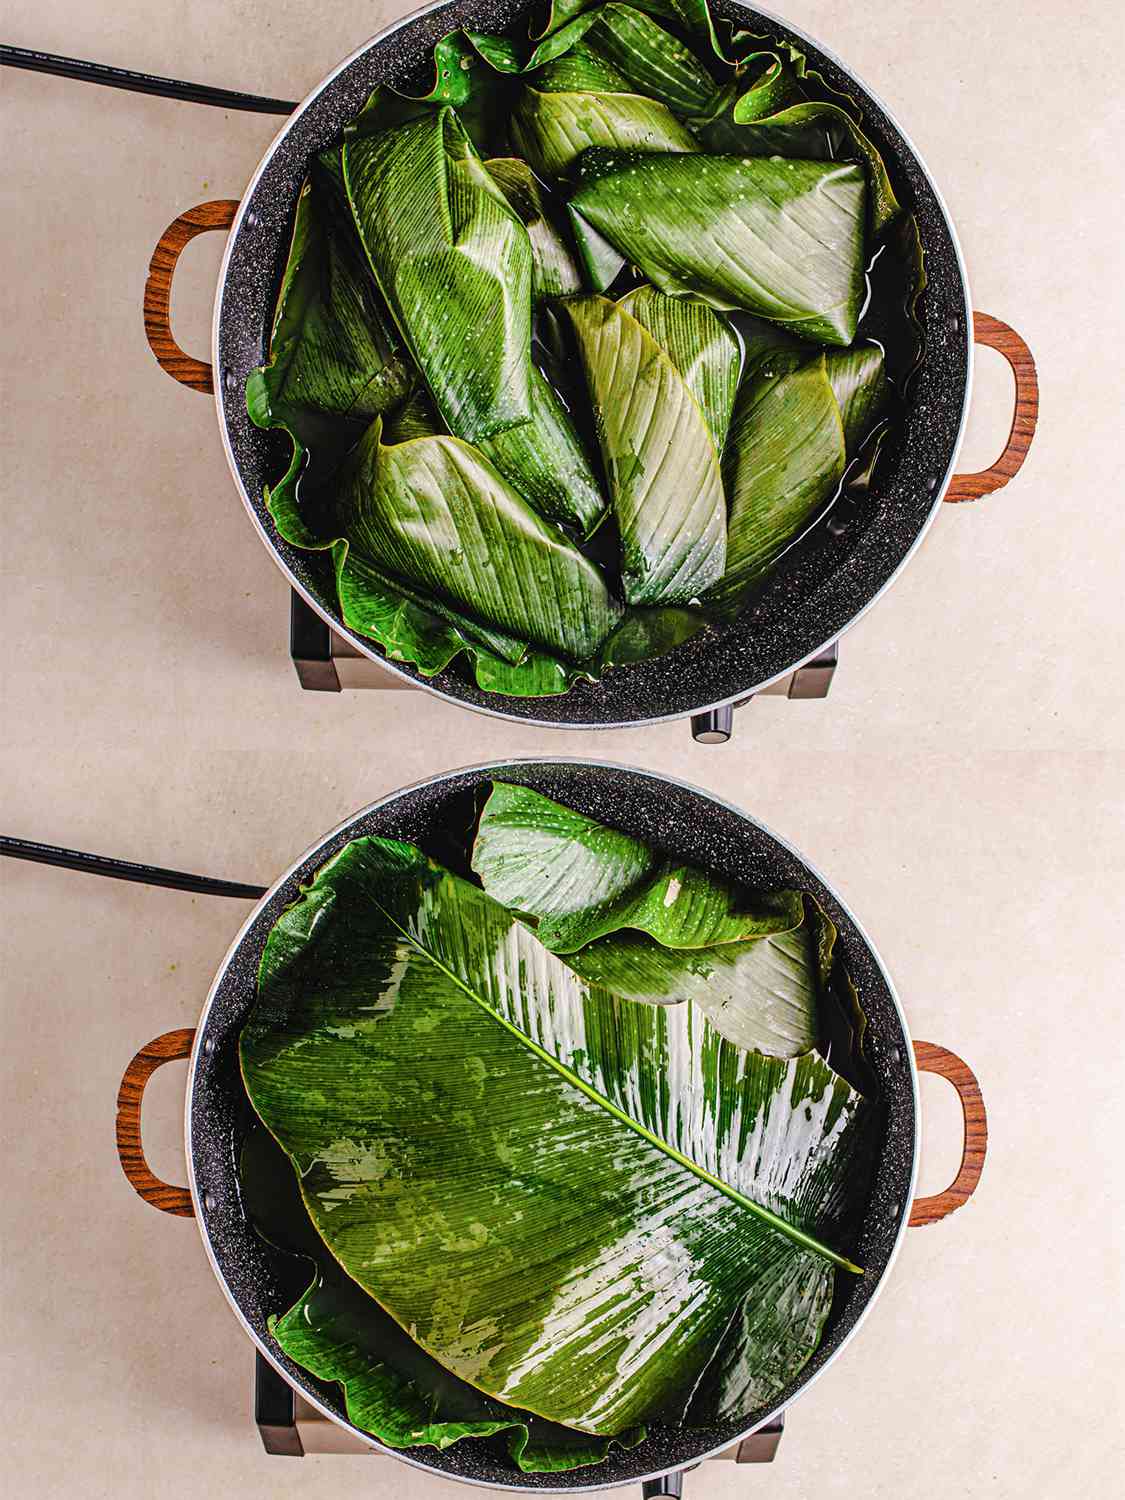 两个图像拼贴的顶视图moin moin前后一锅被覆盖着一片叶子